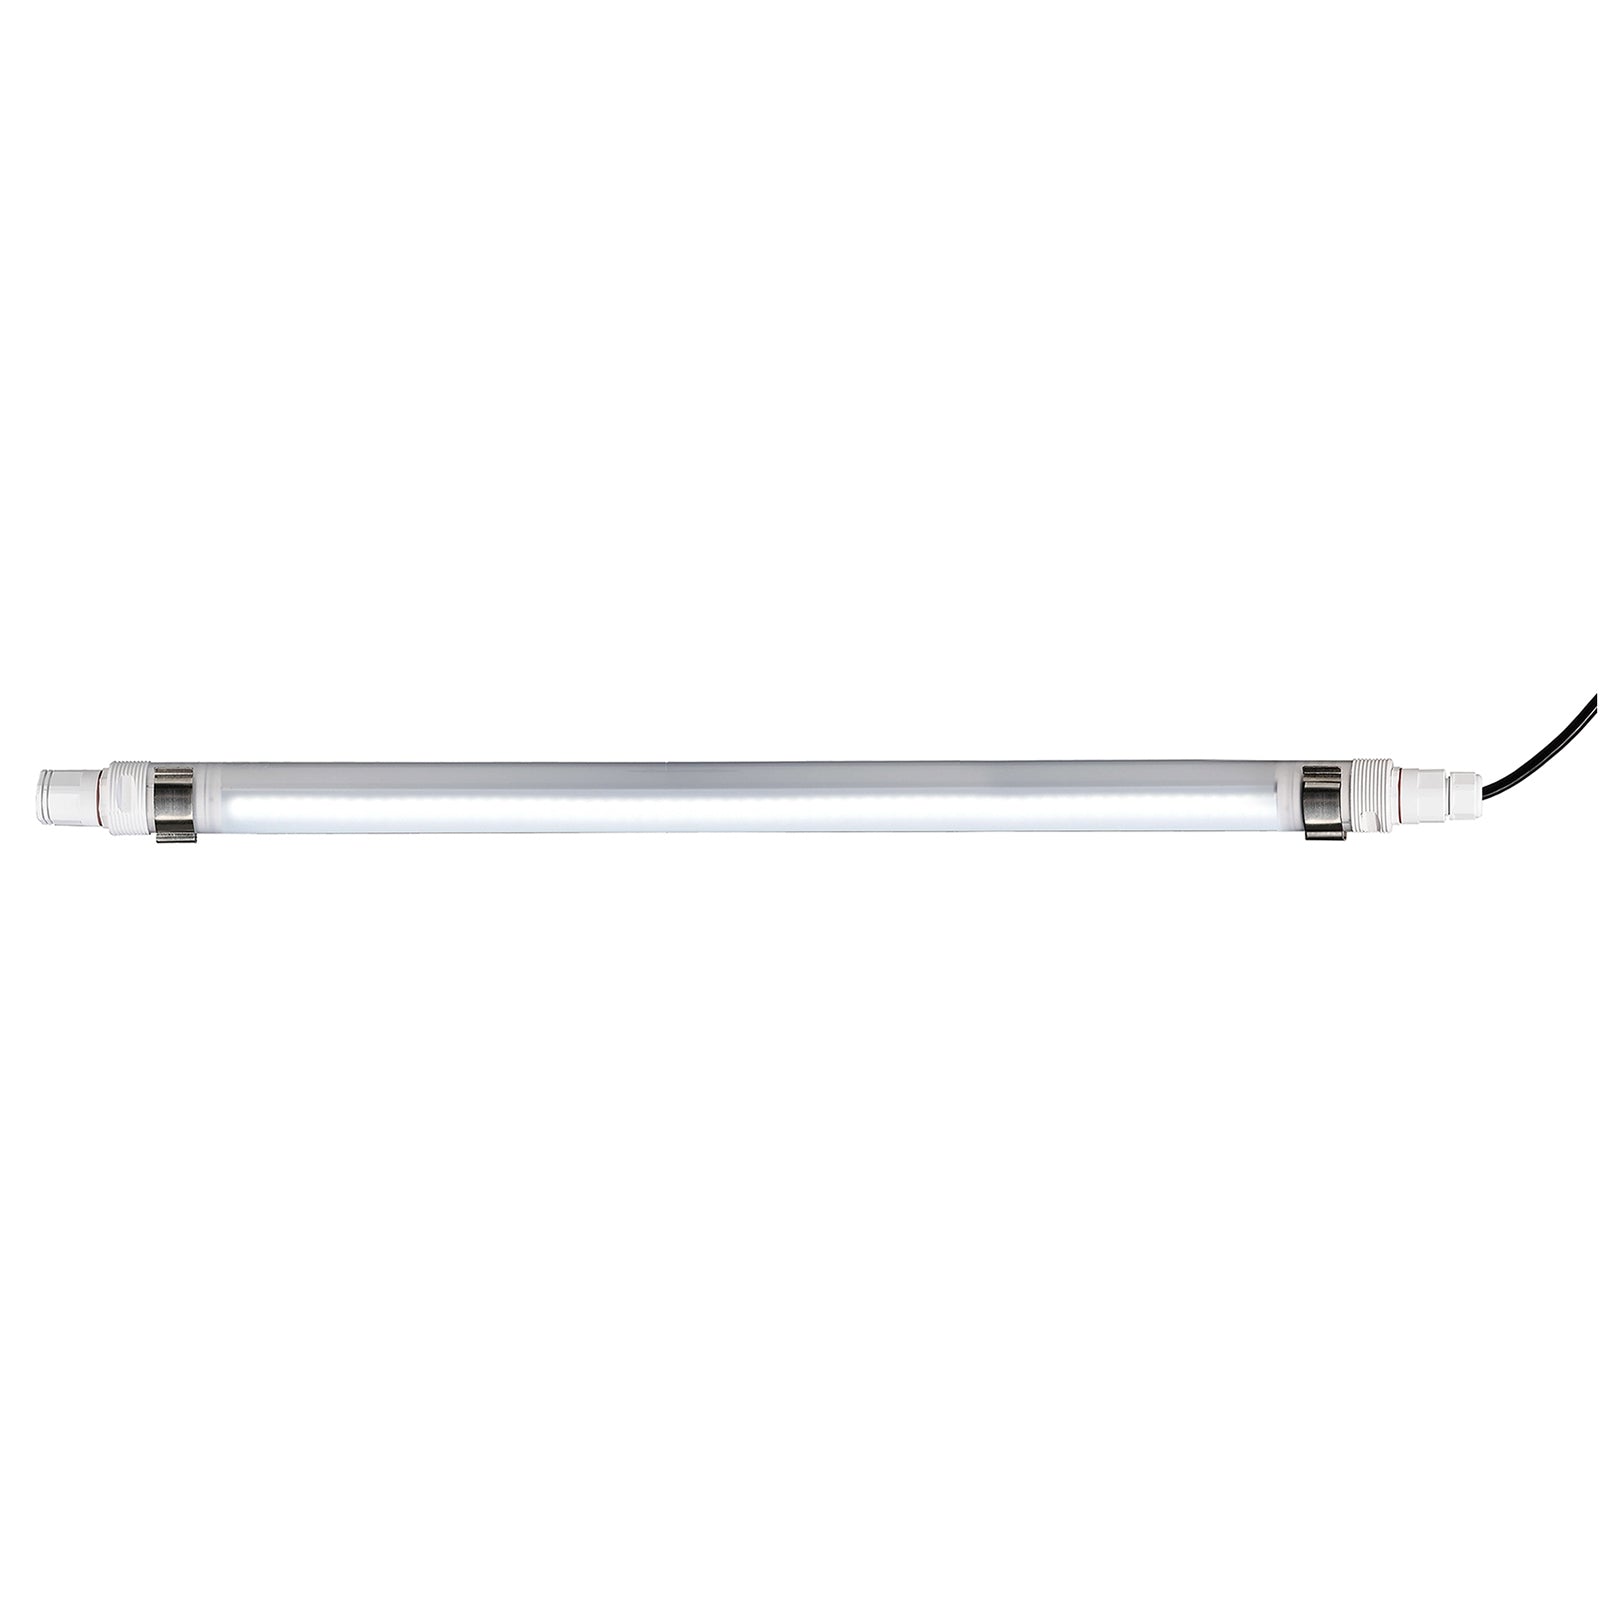 TRI PROOF Lampada LED 21W lineare tubo neon luminoso industriale tenuta stagna IP68 garage seminterrato 230V 70CM